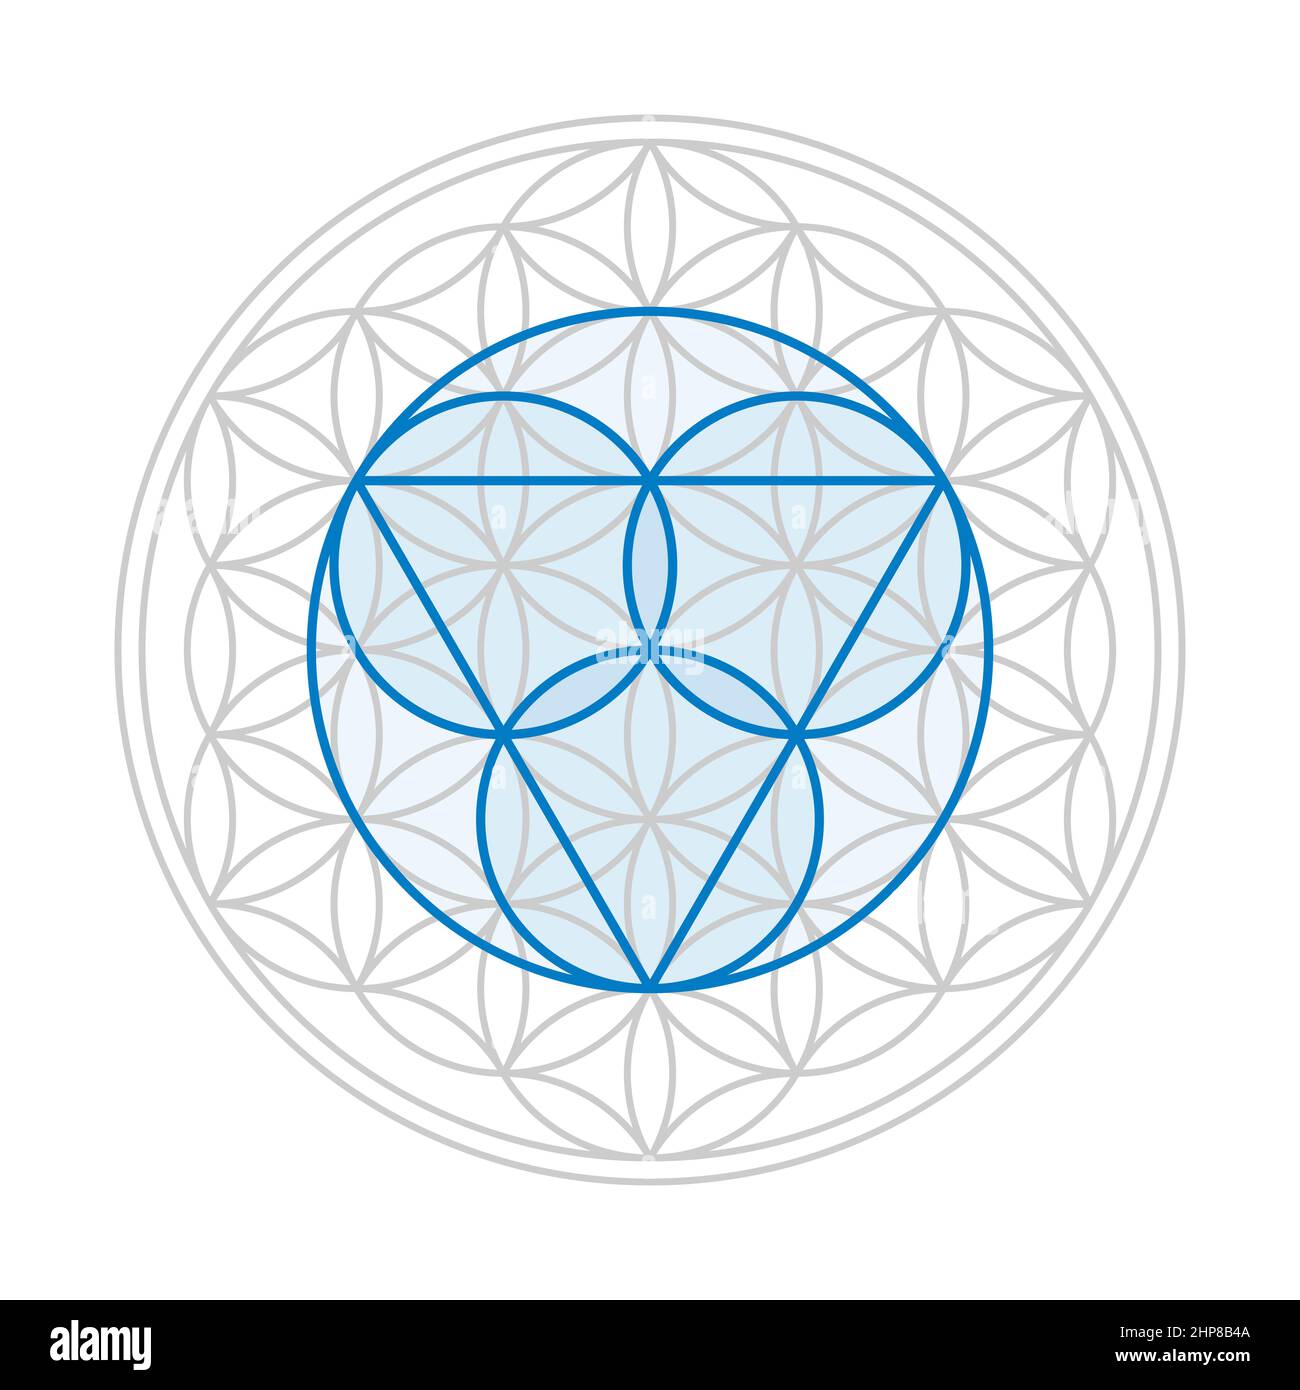 Blaues dreifaltigkeitssymbol, drei Kreise für den Vater, den Sohn Jesus Christus und den Heiligen Geist, über einer grauen Blume des Lebens, einer geometrischen Figur. Stockfoto